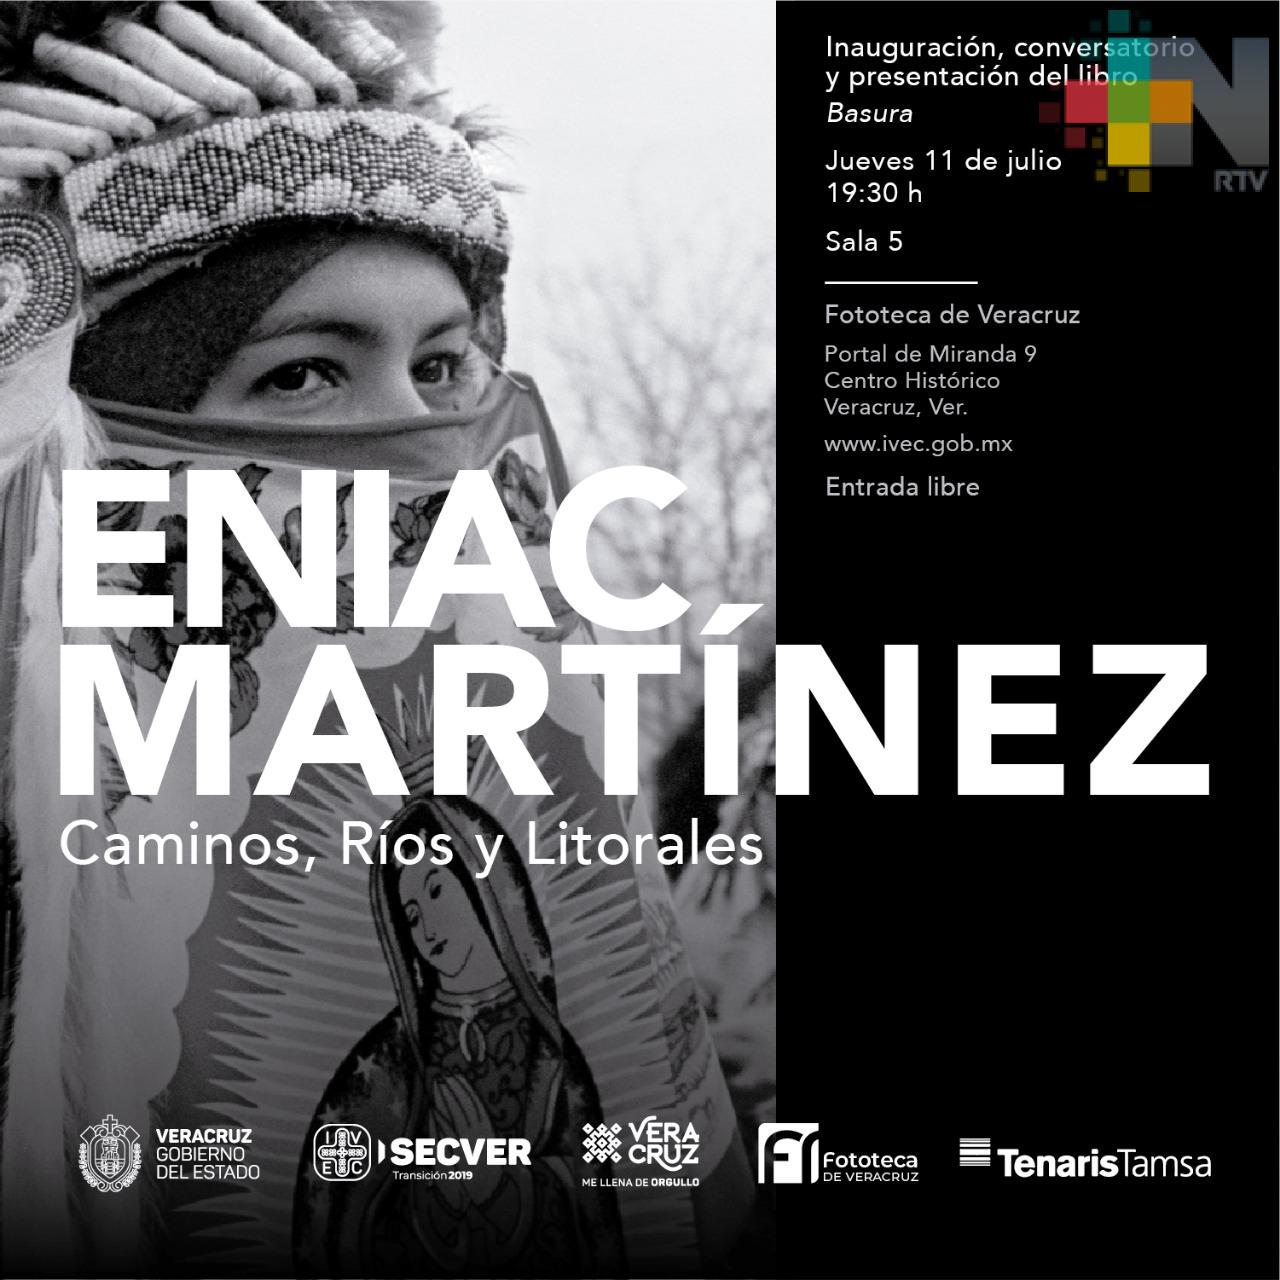 Presentará Fototeca de Veracruz exposición “Caminos, ríos y litorales”